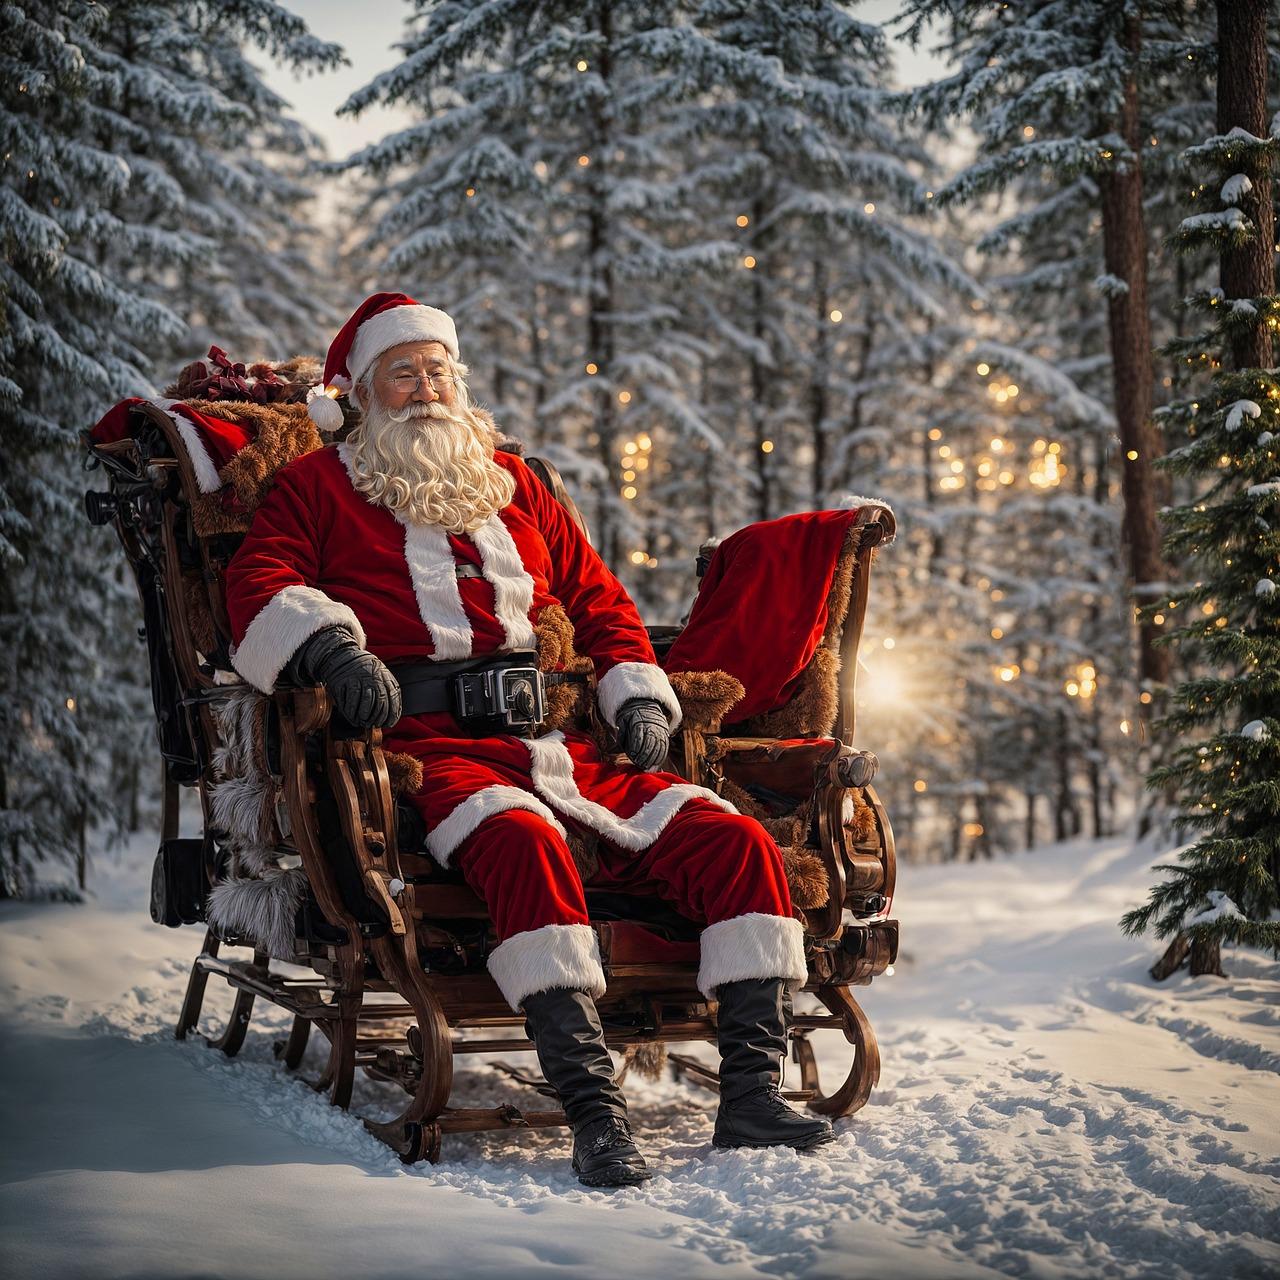 Созданный Ии Дед Мороз Зима - Бесплатное изображение на Pixabay - Pixabay